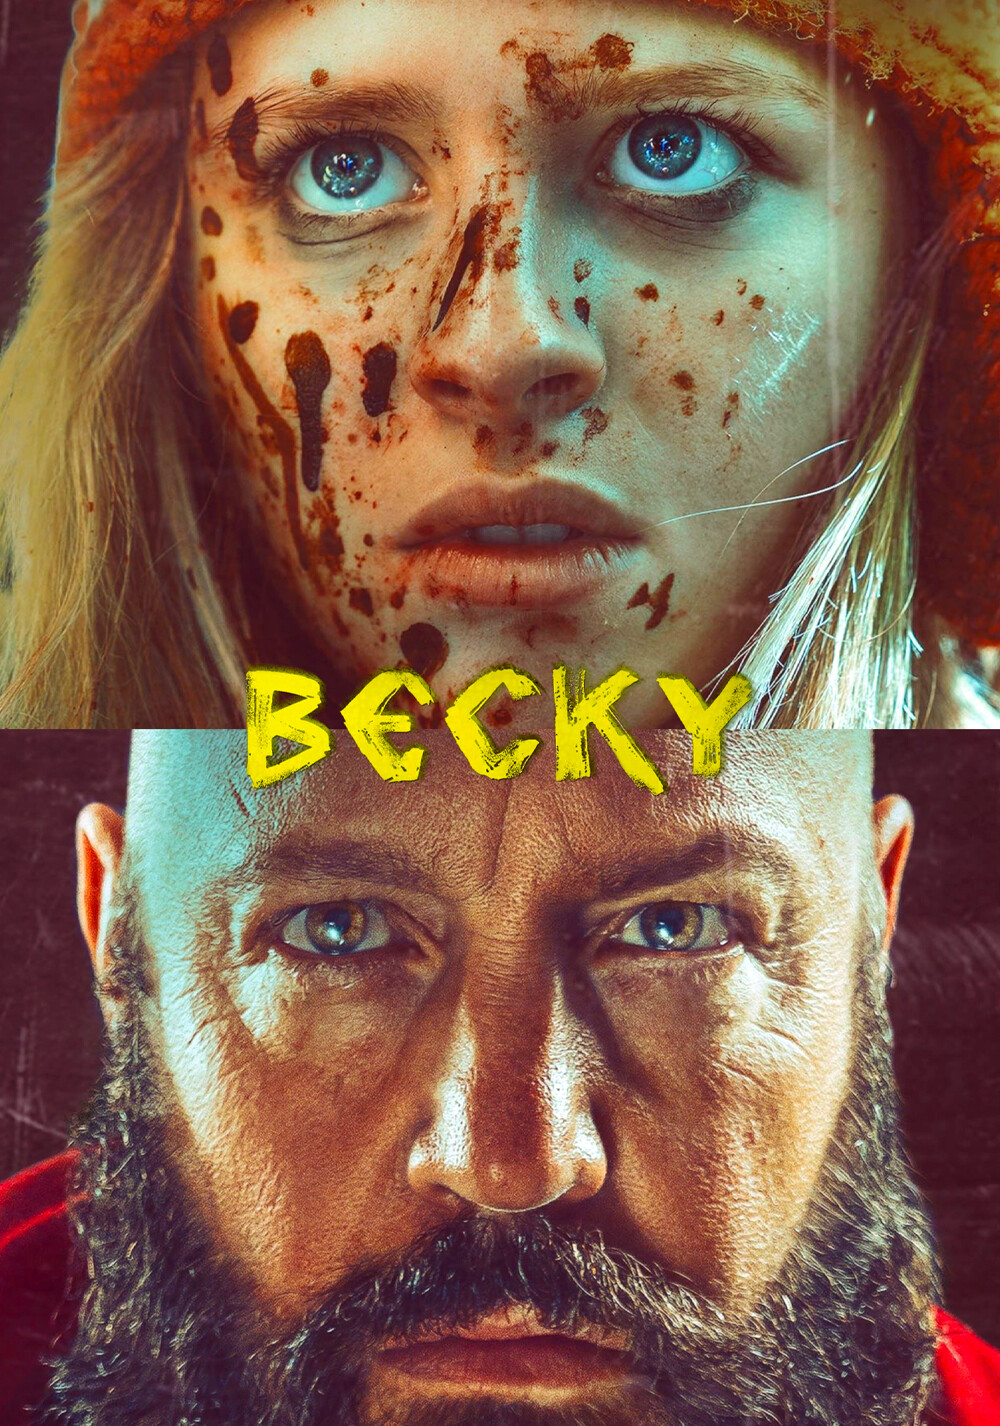 Becky 2020 1080p BluRay x264-WUTANG